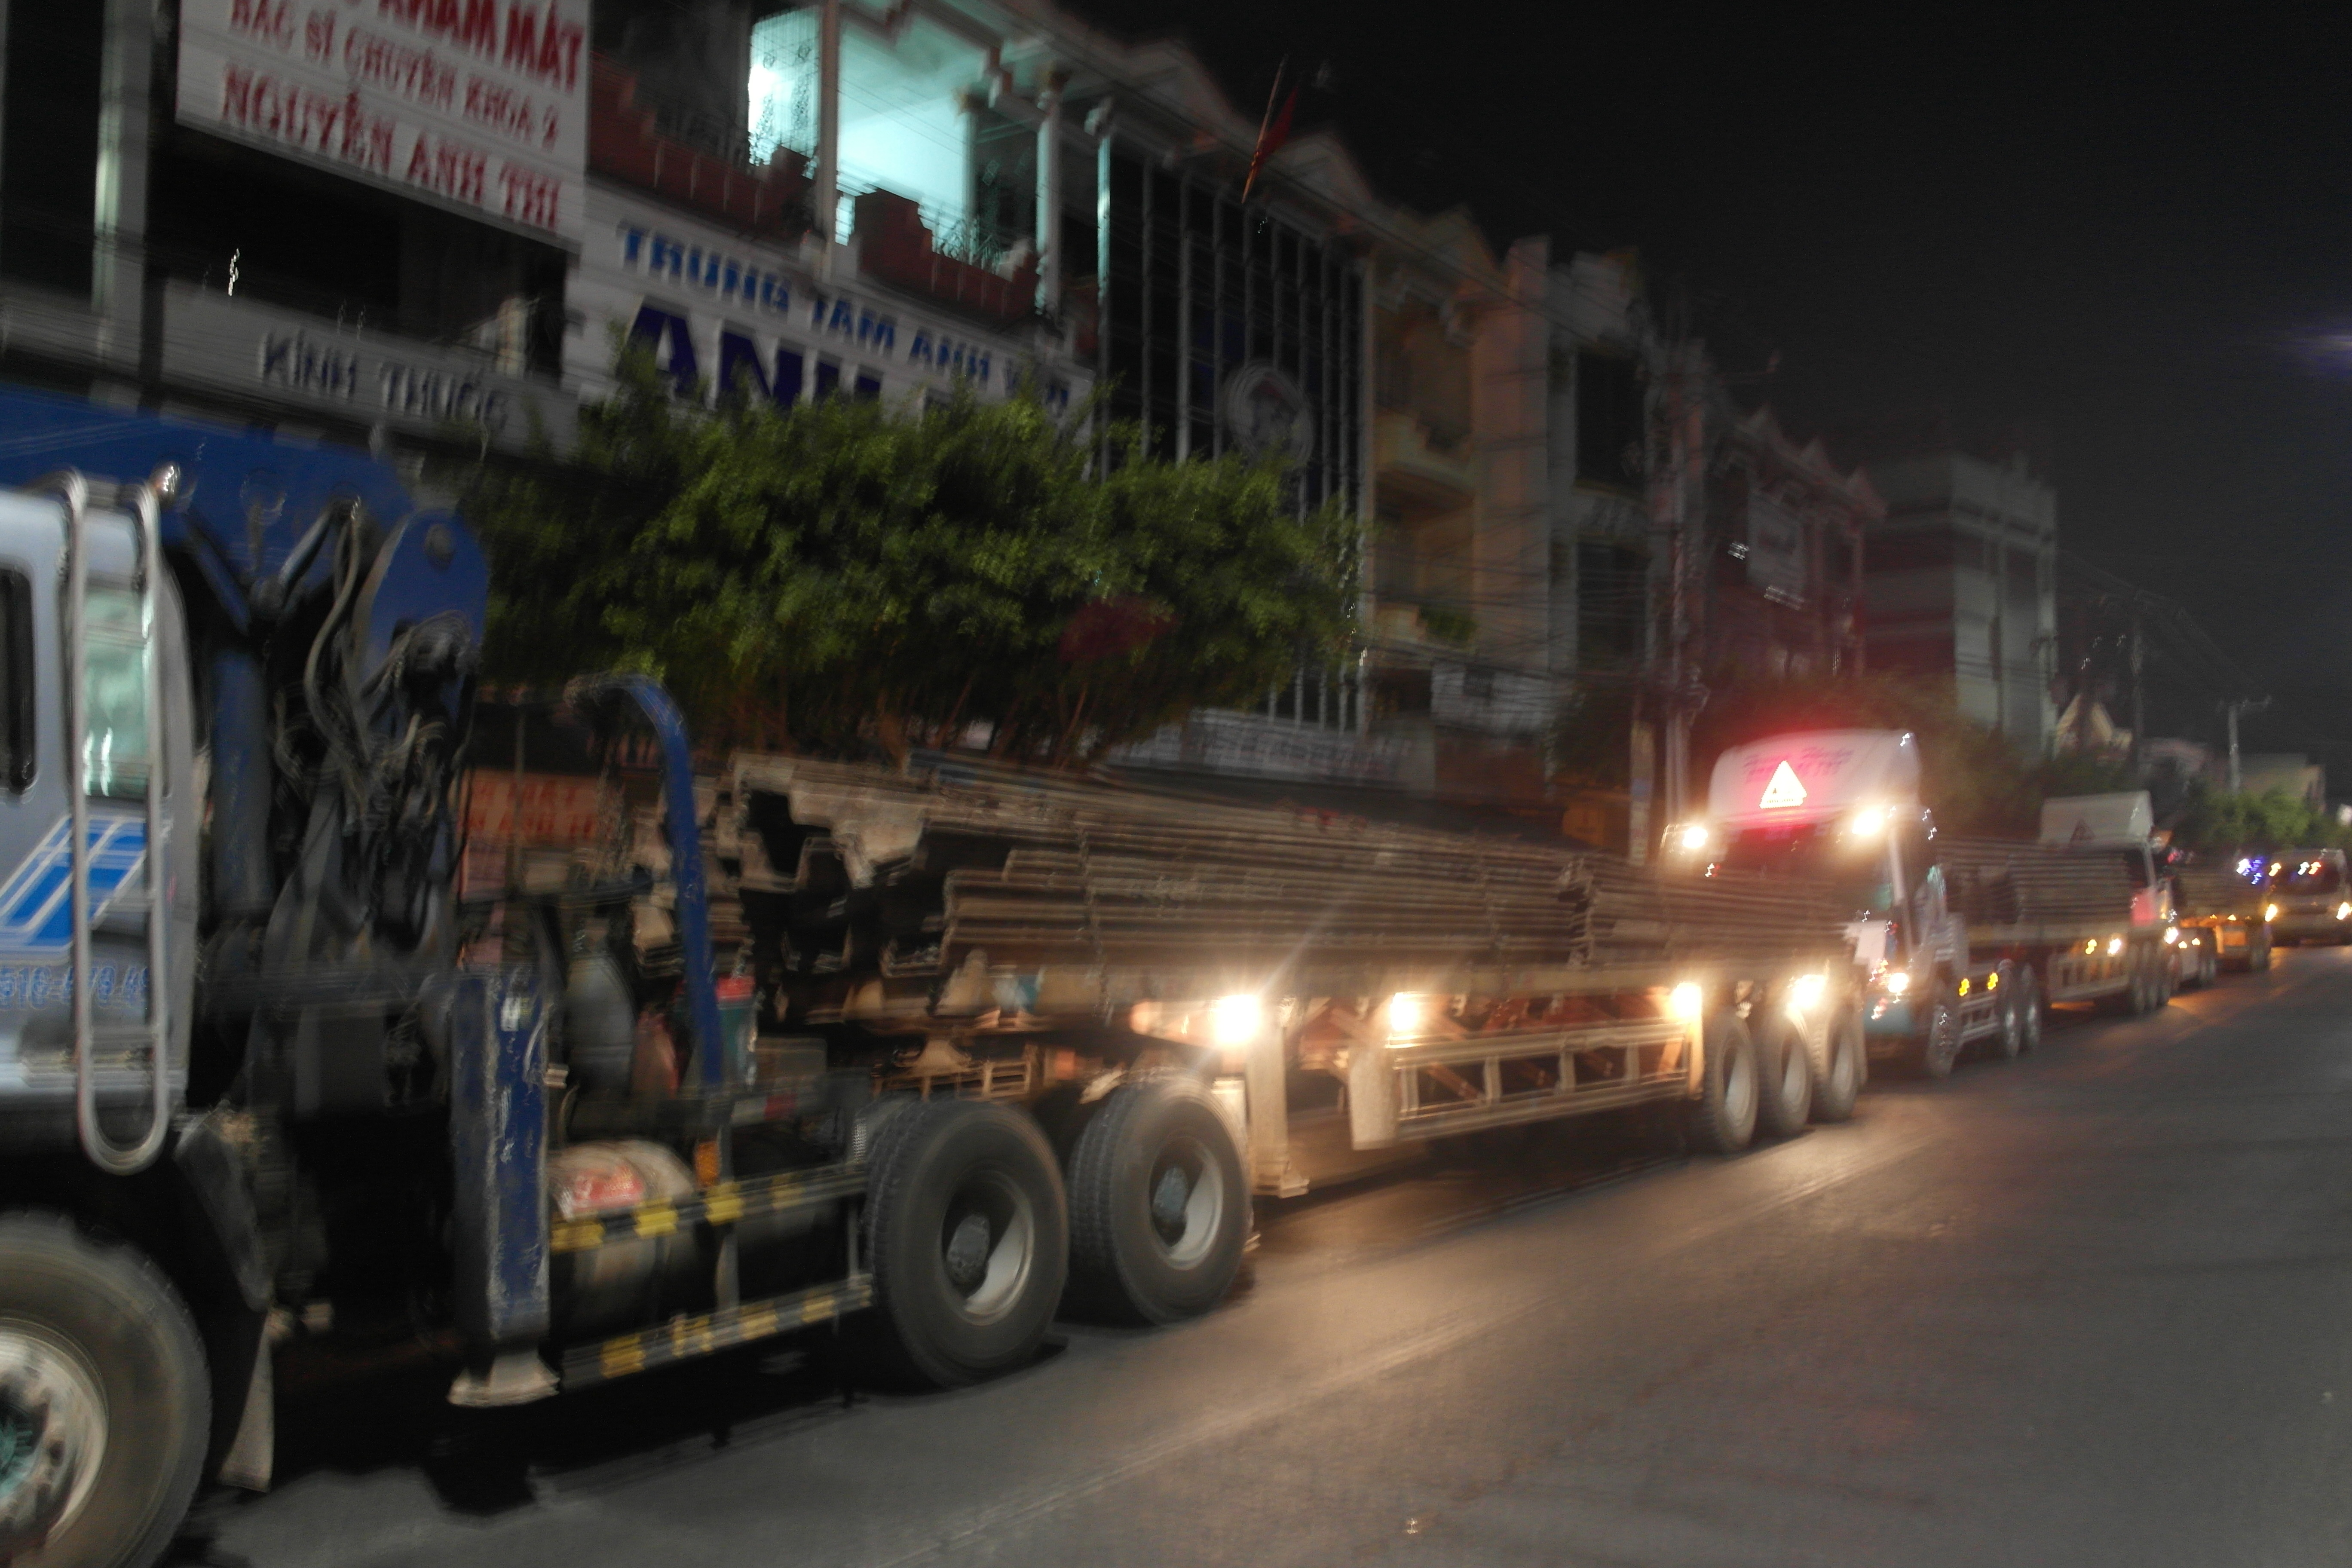 Các xe đầu kéo chở hàng "khủng" bị cơ quan chức năng tỉnh Vĩnh Long phát hiện lúc 3 giờ sáng - Ảnh: Thanh Đức